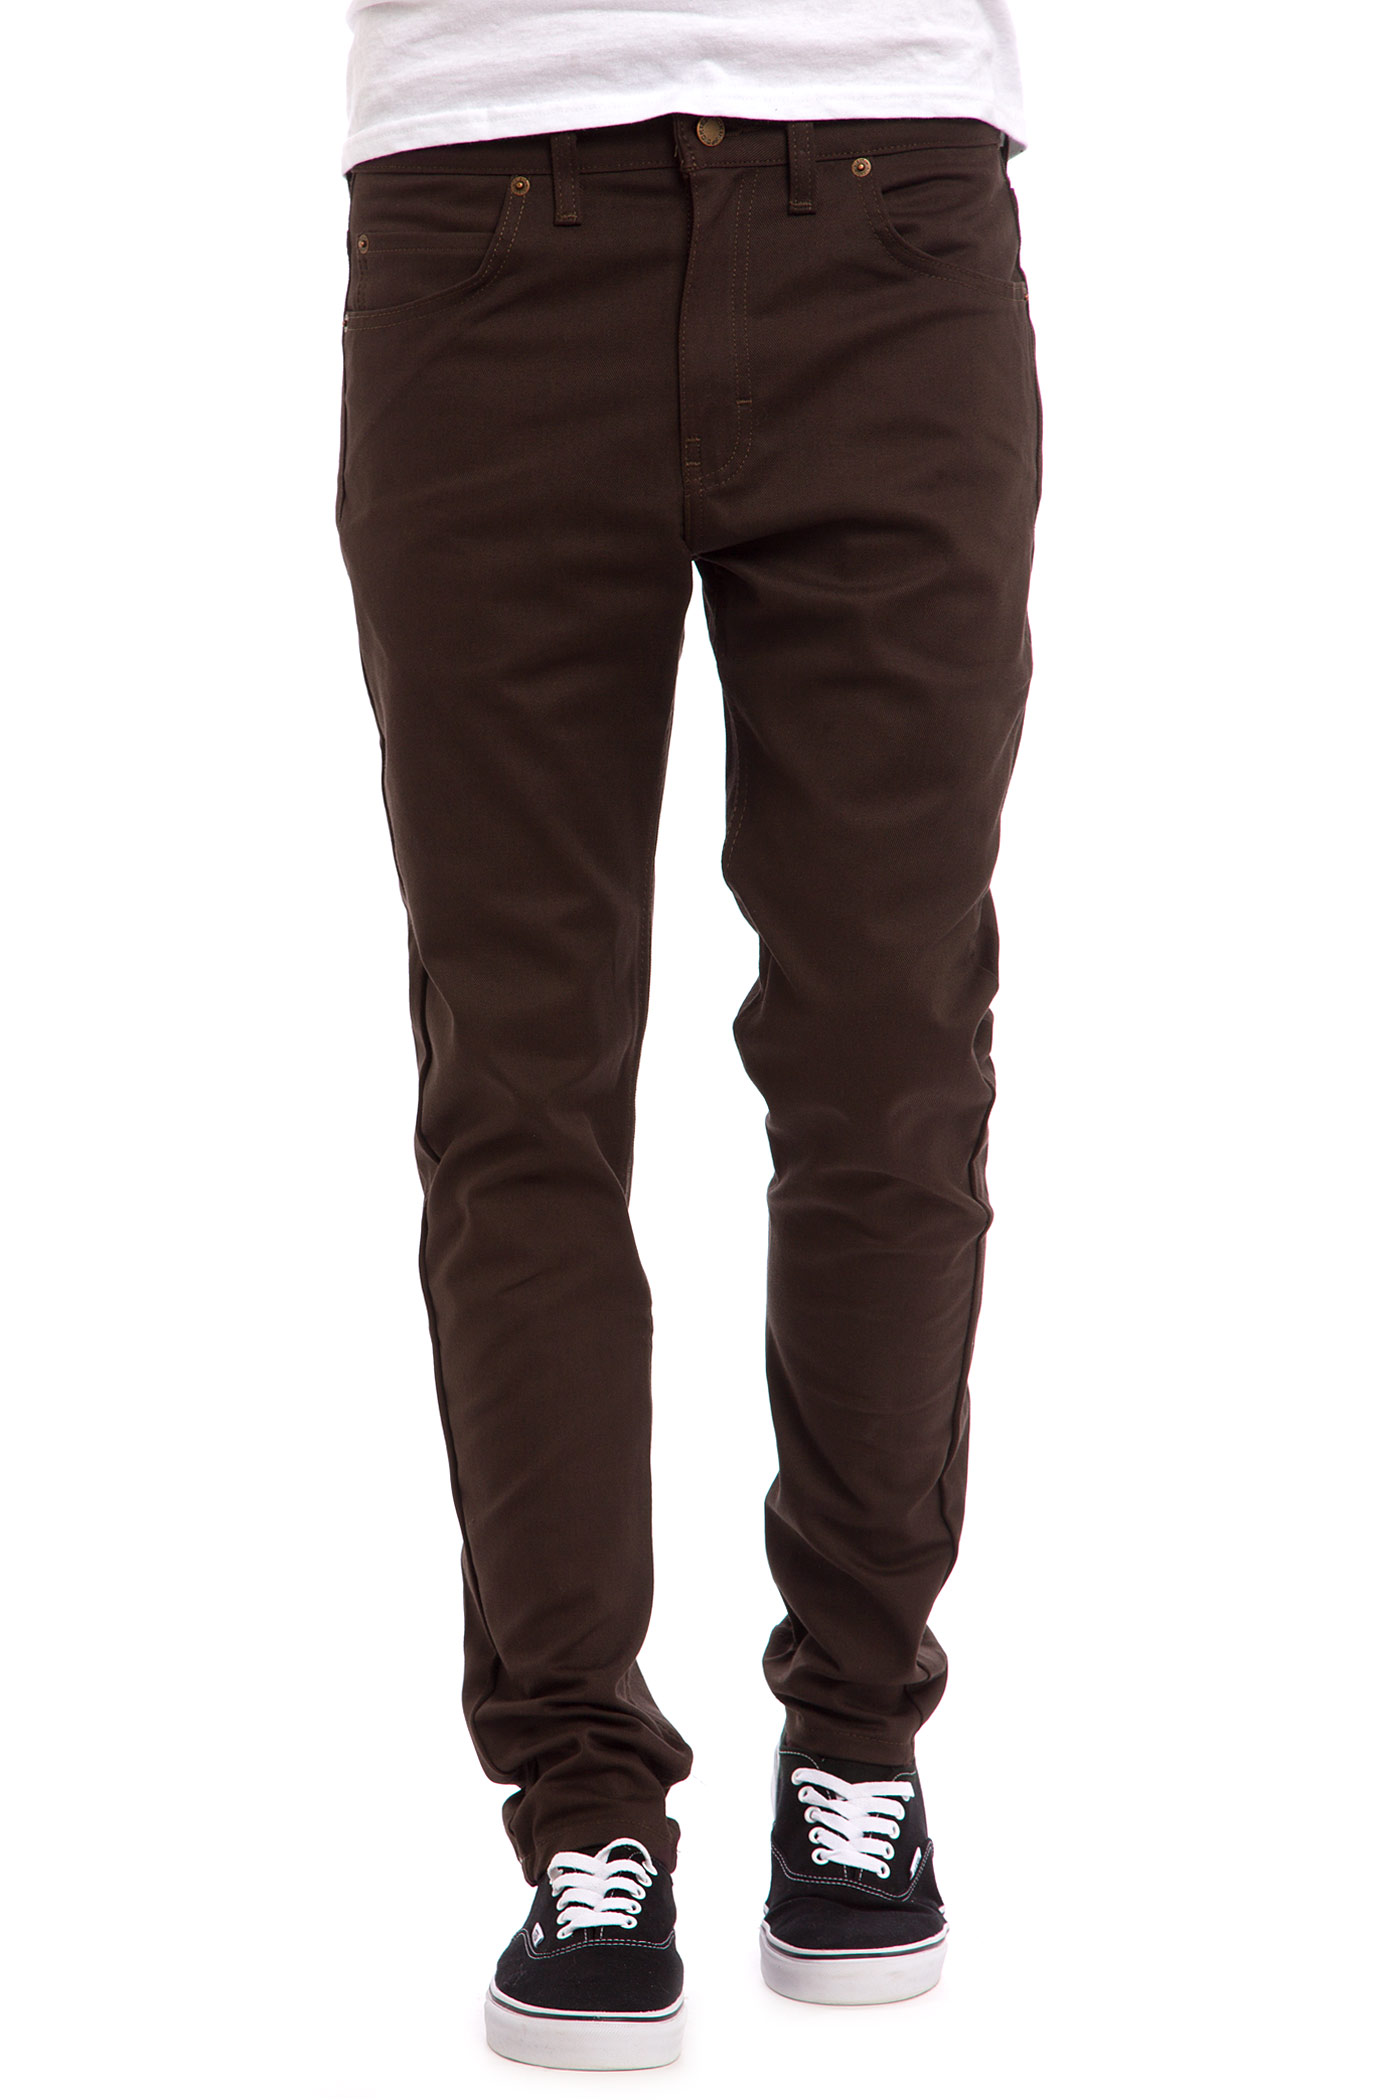 Dickies Slim Skinny Pants (dark brown) buy at skatedeluxe